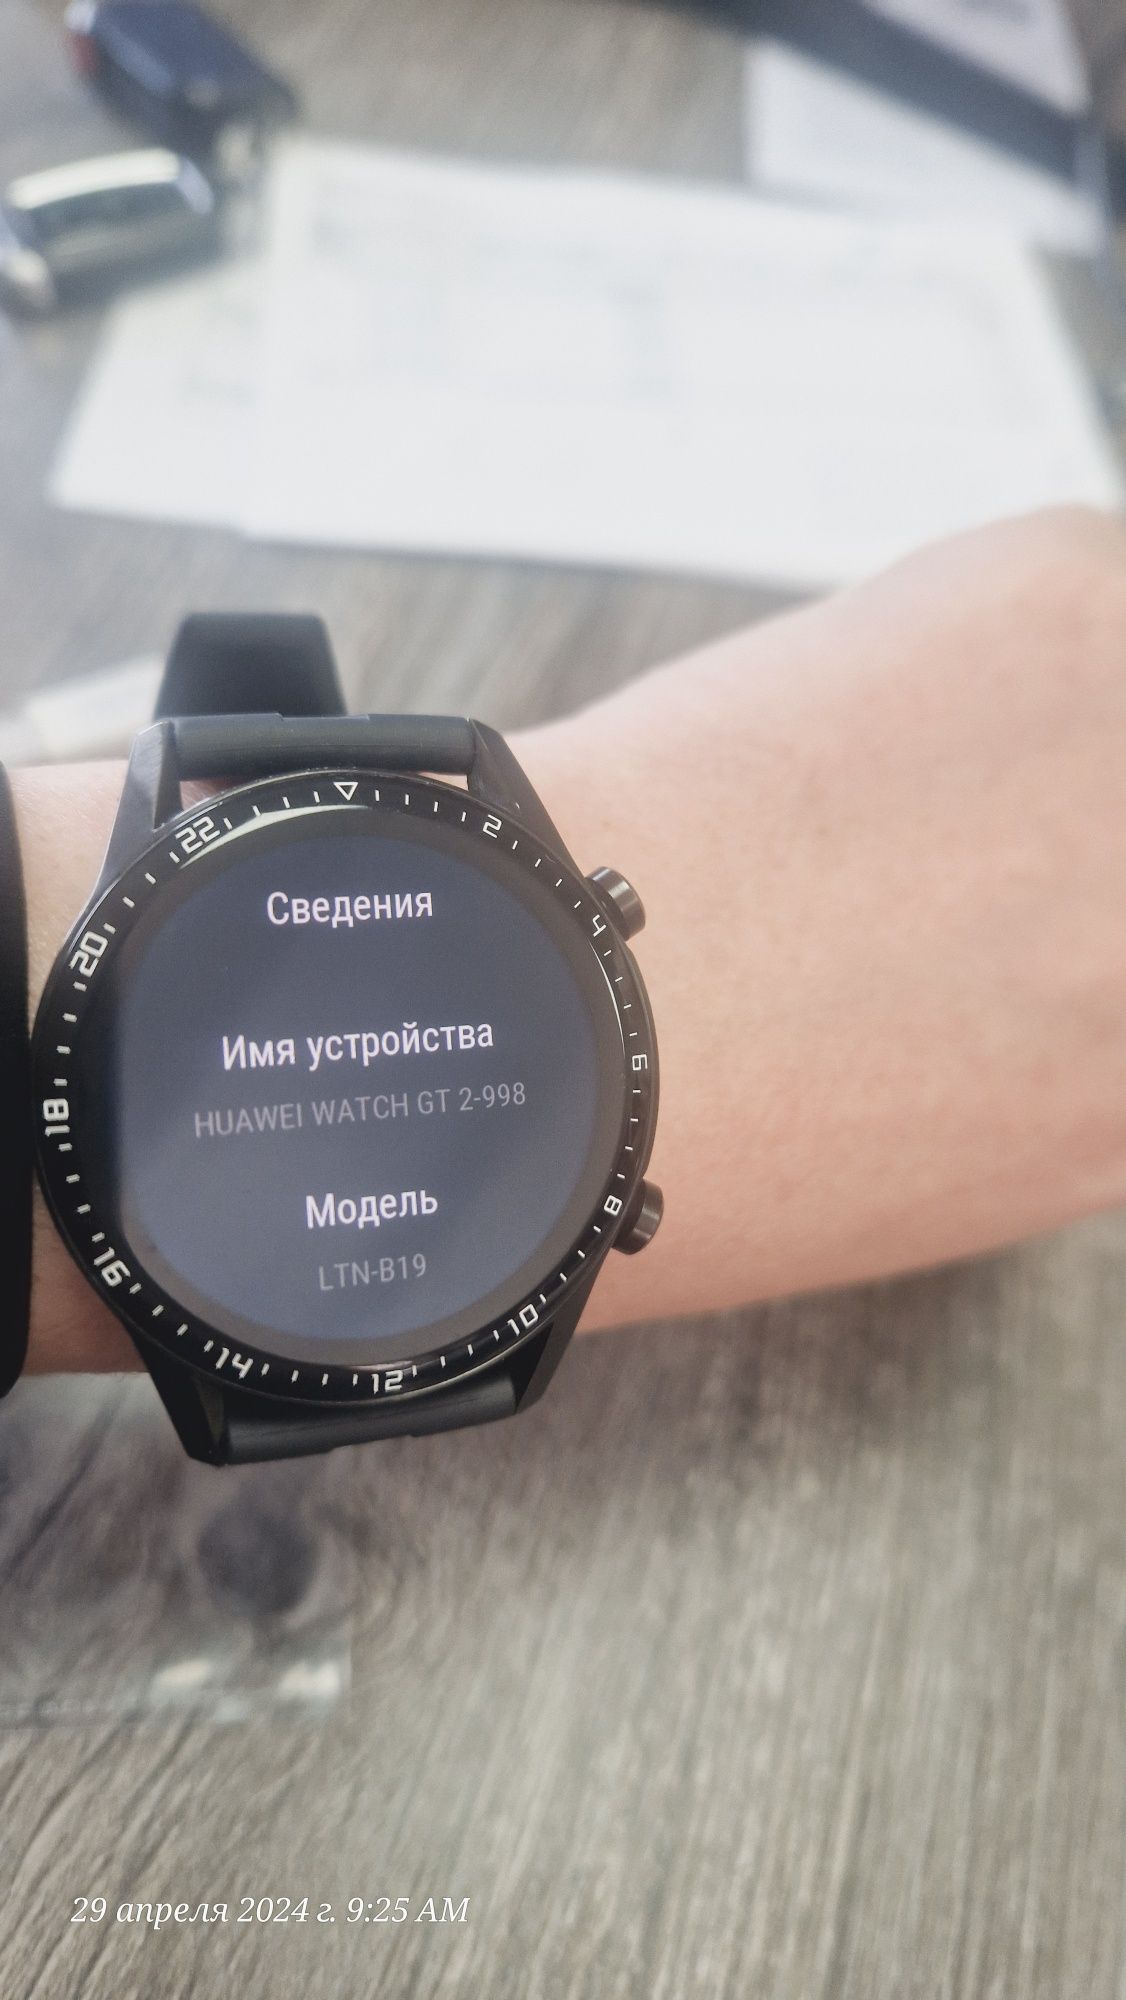 Смарт часы Huawei with GT 2-998